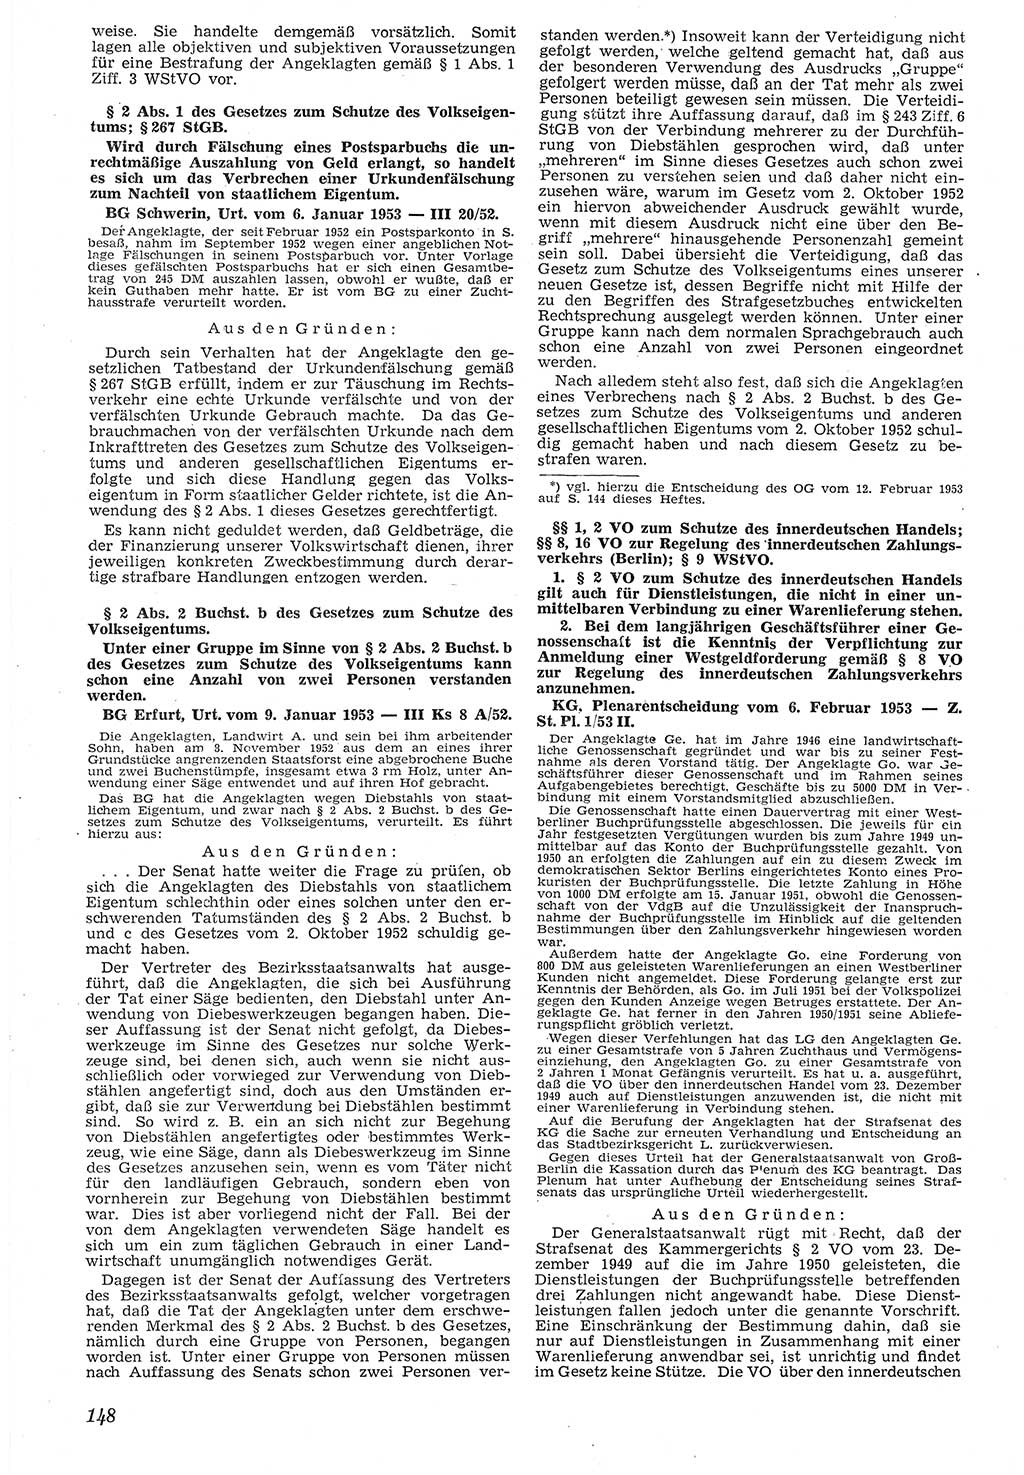 Neue Justiz (NJ), Zeitschrift für Recht und Rechtswissenschaft [Deutsche Demokratische Republik (DDR)], 7. Jahrgang 1953, Seite 148 (NJ DDR 1953, S. 148)